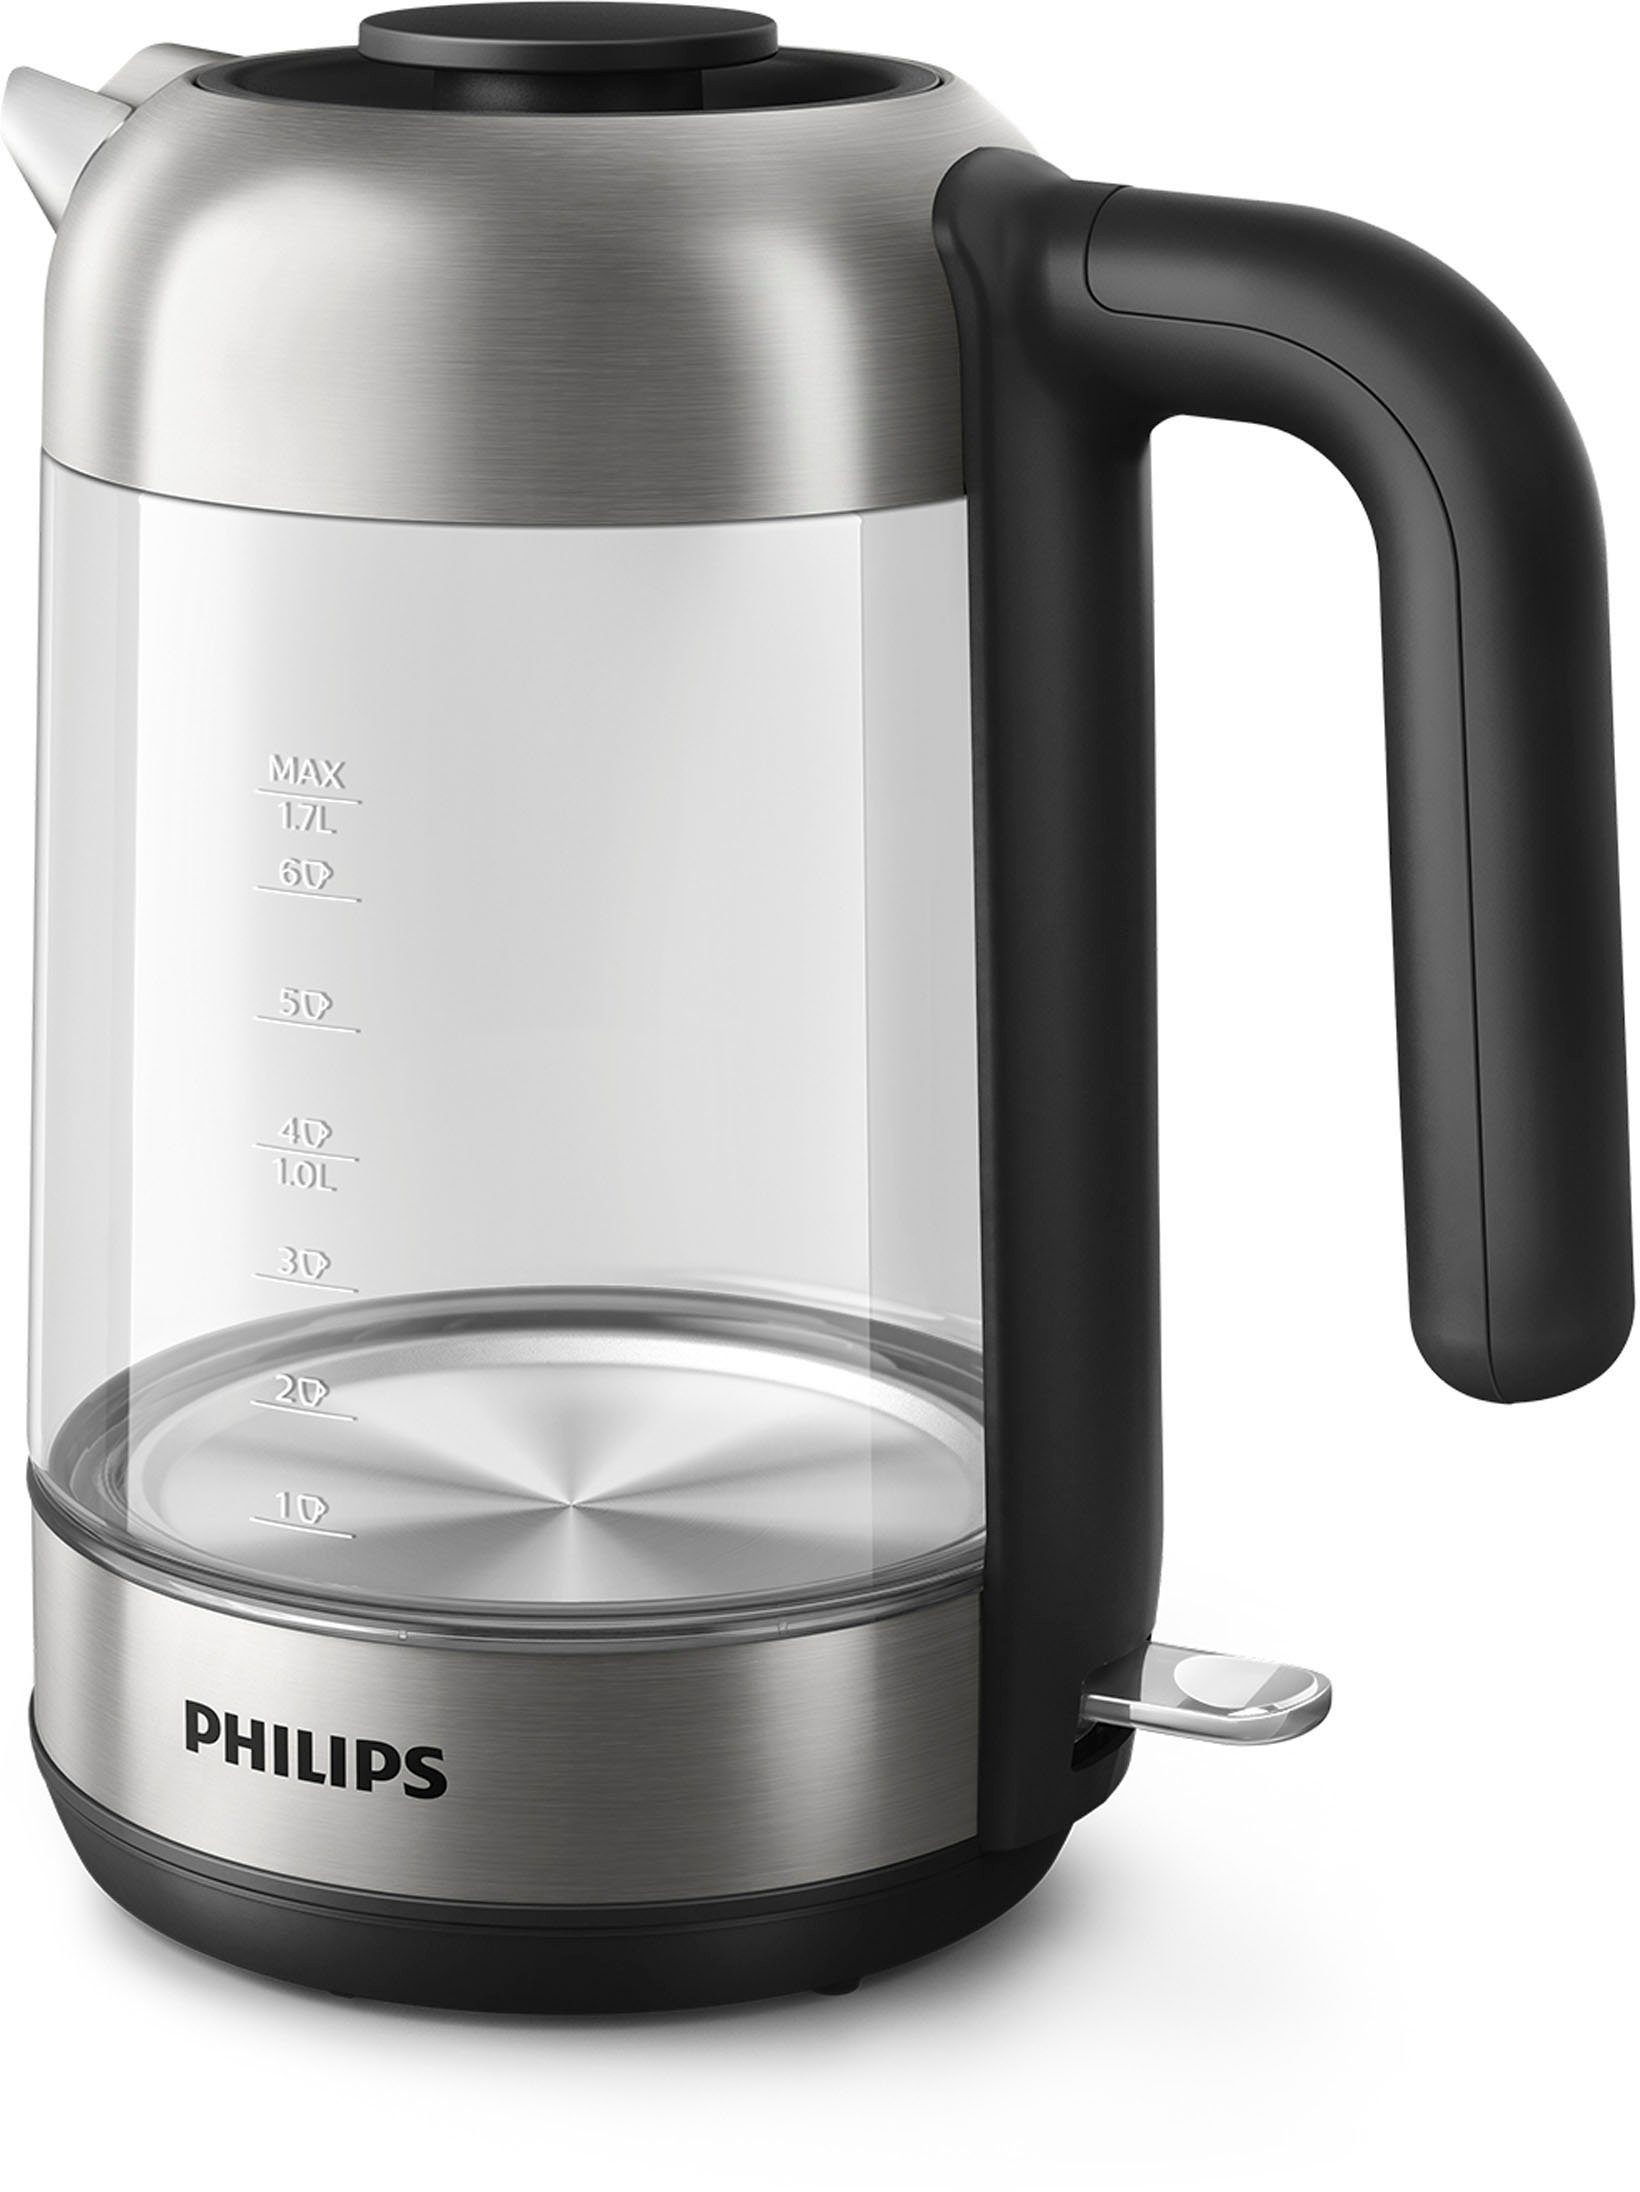 Philips 2200 Wasserkocher Series 1,7 l, W 5000 HD9339/80,